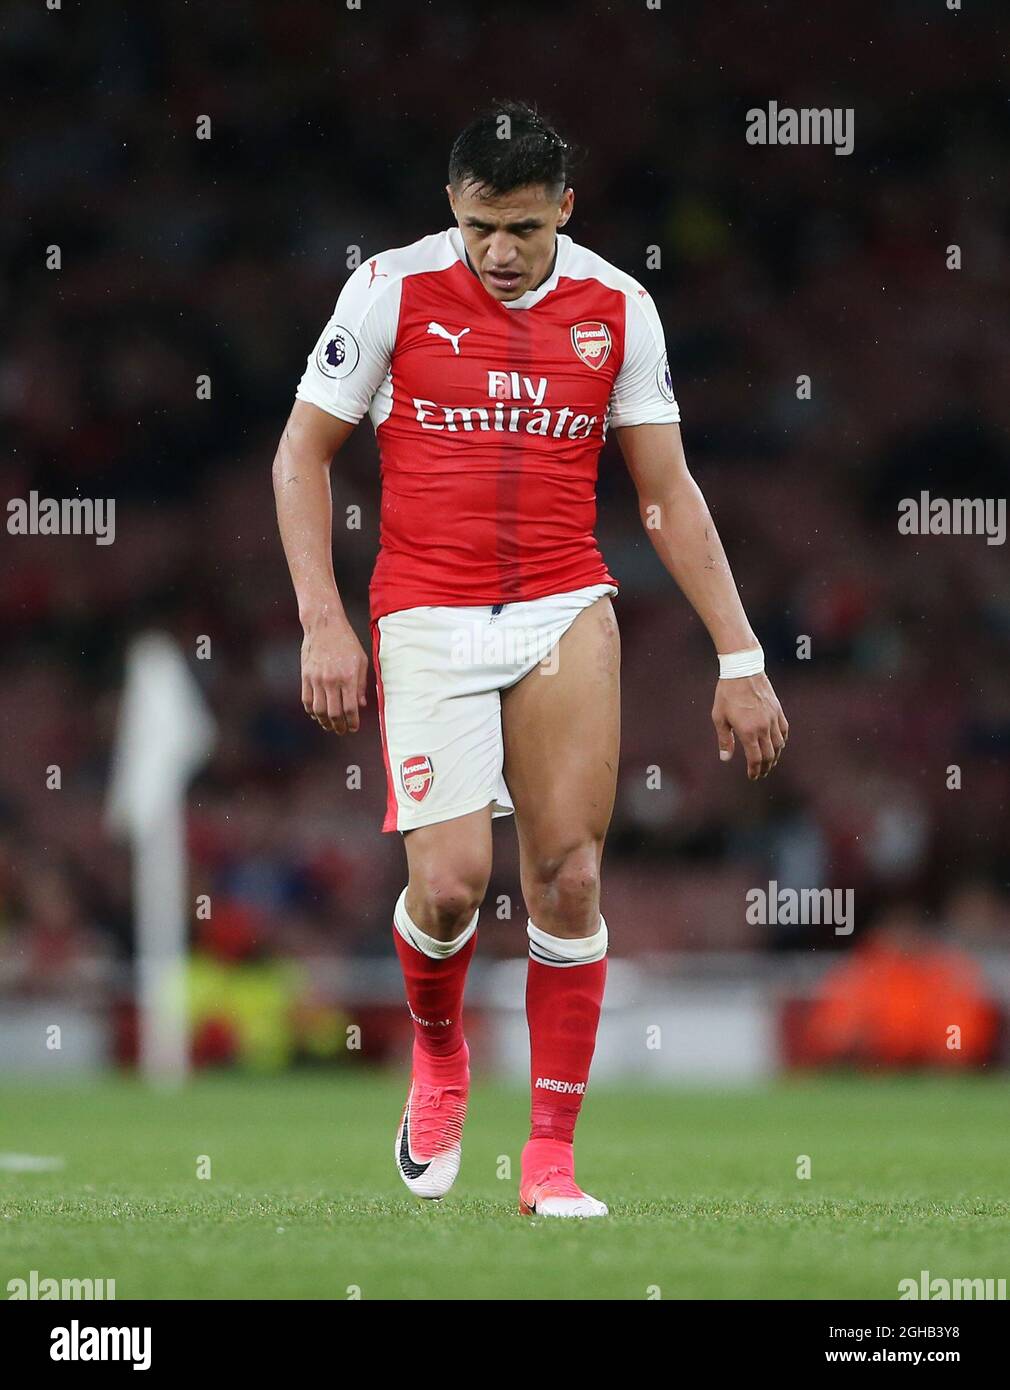 Alexis Sanchez von Arsenal zeigt sich während des Spiels der Premier League  im Emirates Stadium in London am Oberschenkel. Bilddatum: 16. Mai 2017.  Bildnachweis sollte lauten: David Klein/Sportimage via PA Images  Stockfotografie -